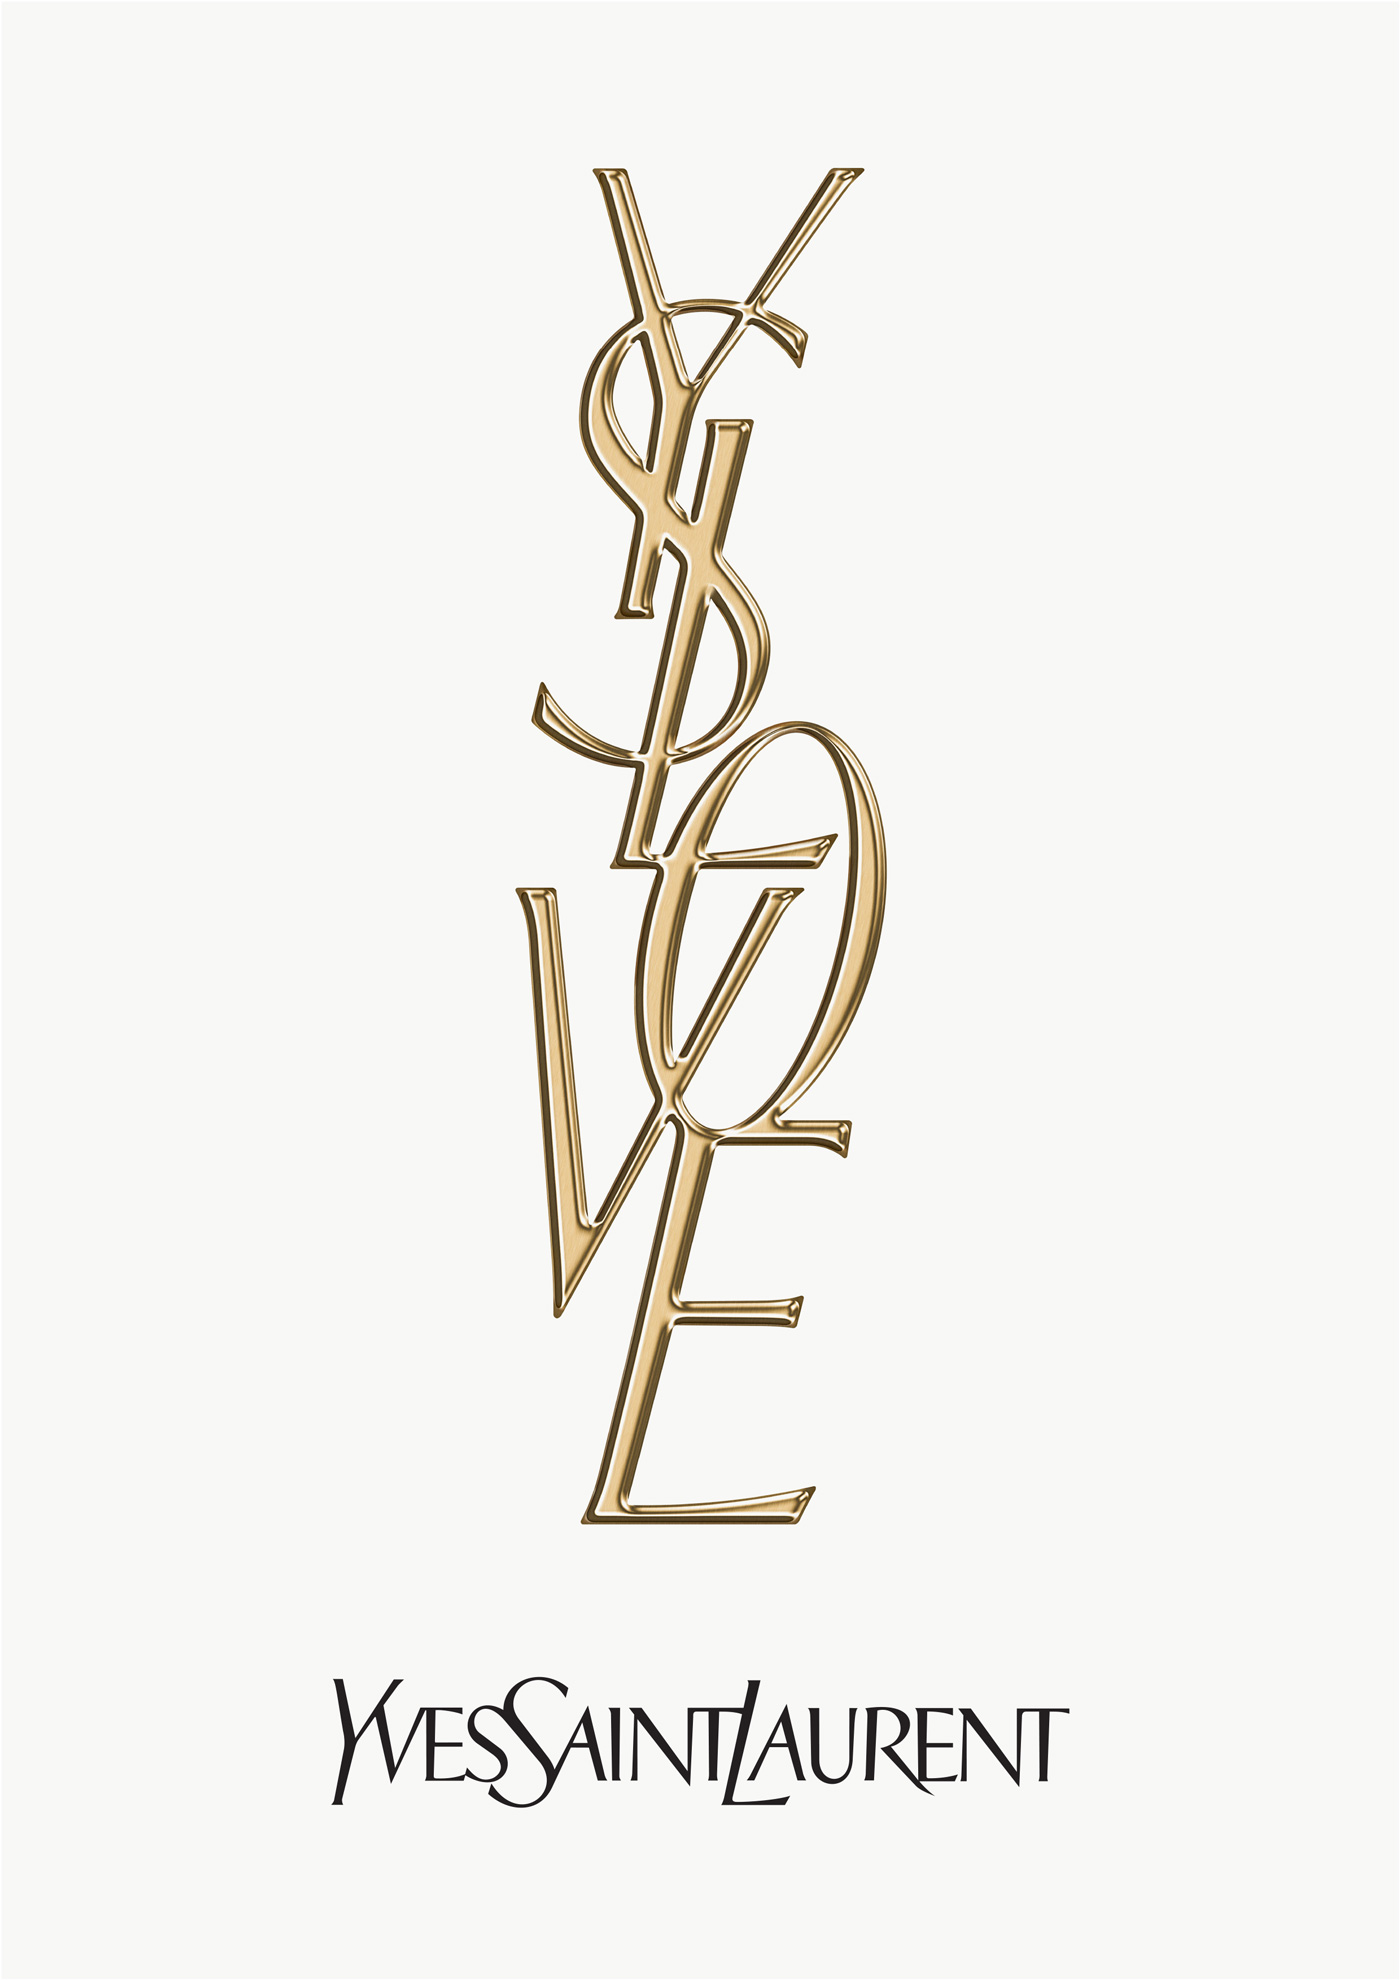 Yves Saint Laurent / YSL Parfums – Love concept artwork (proposal)